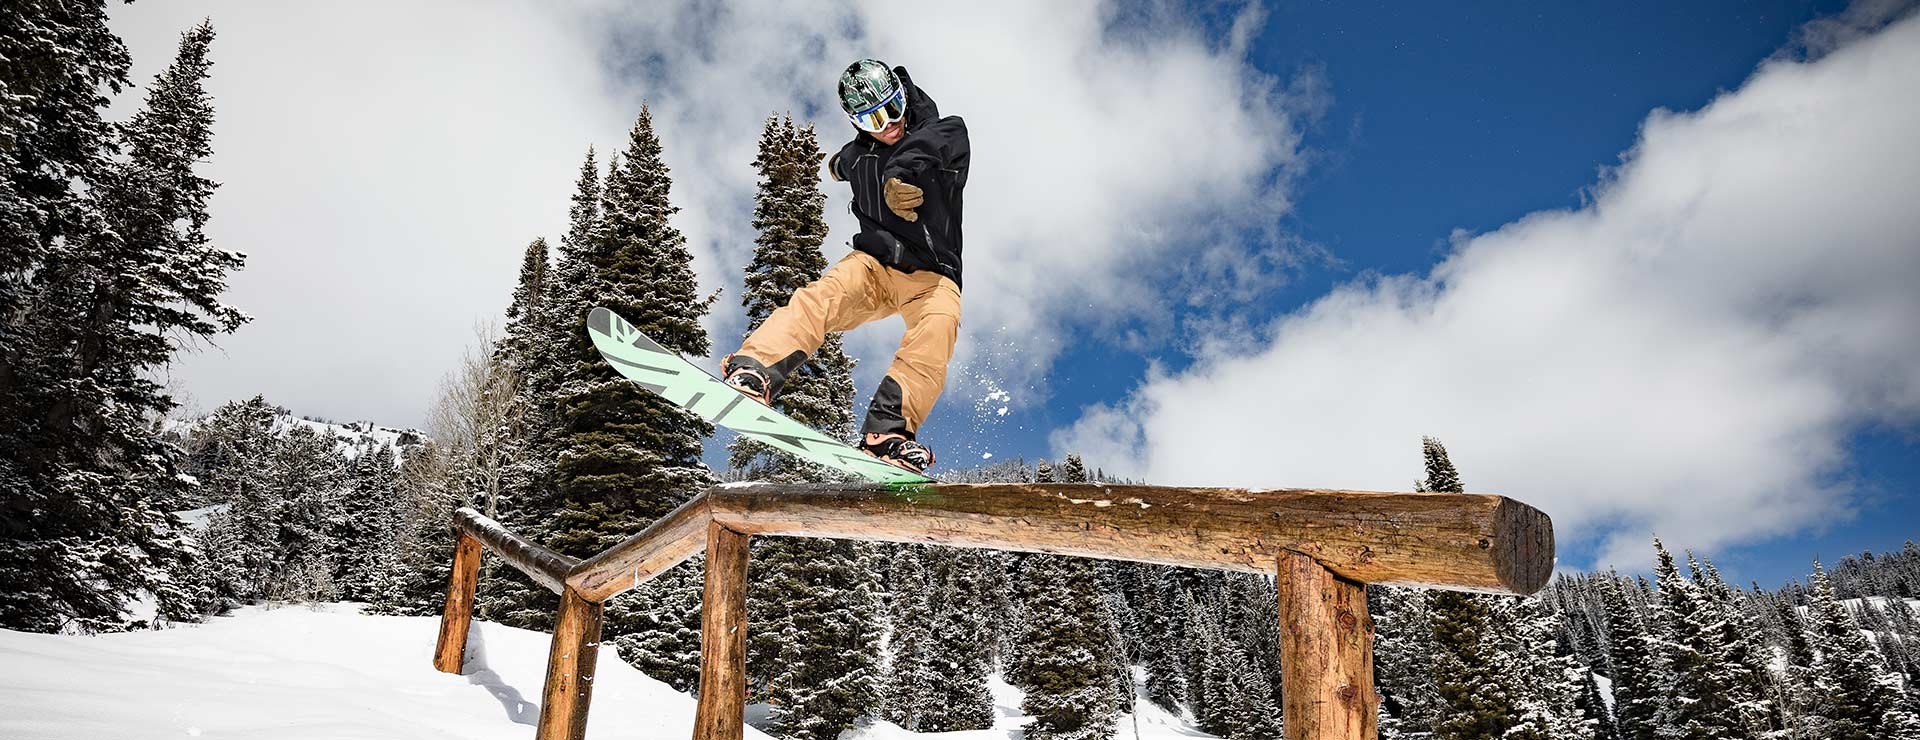 Snowboarder riding a rail in the terrain park